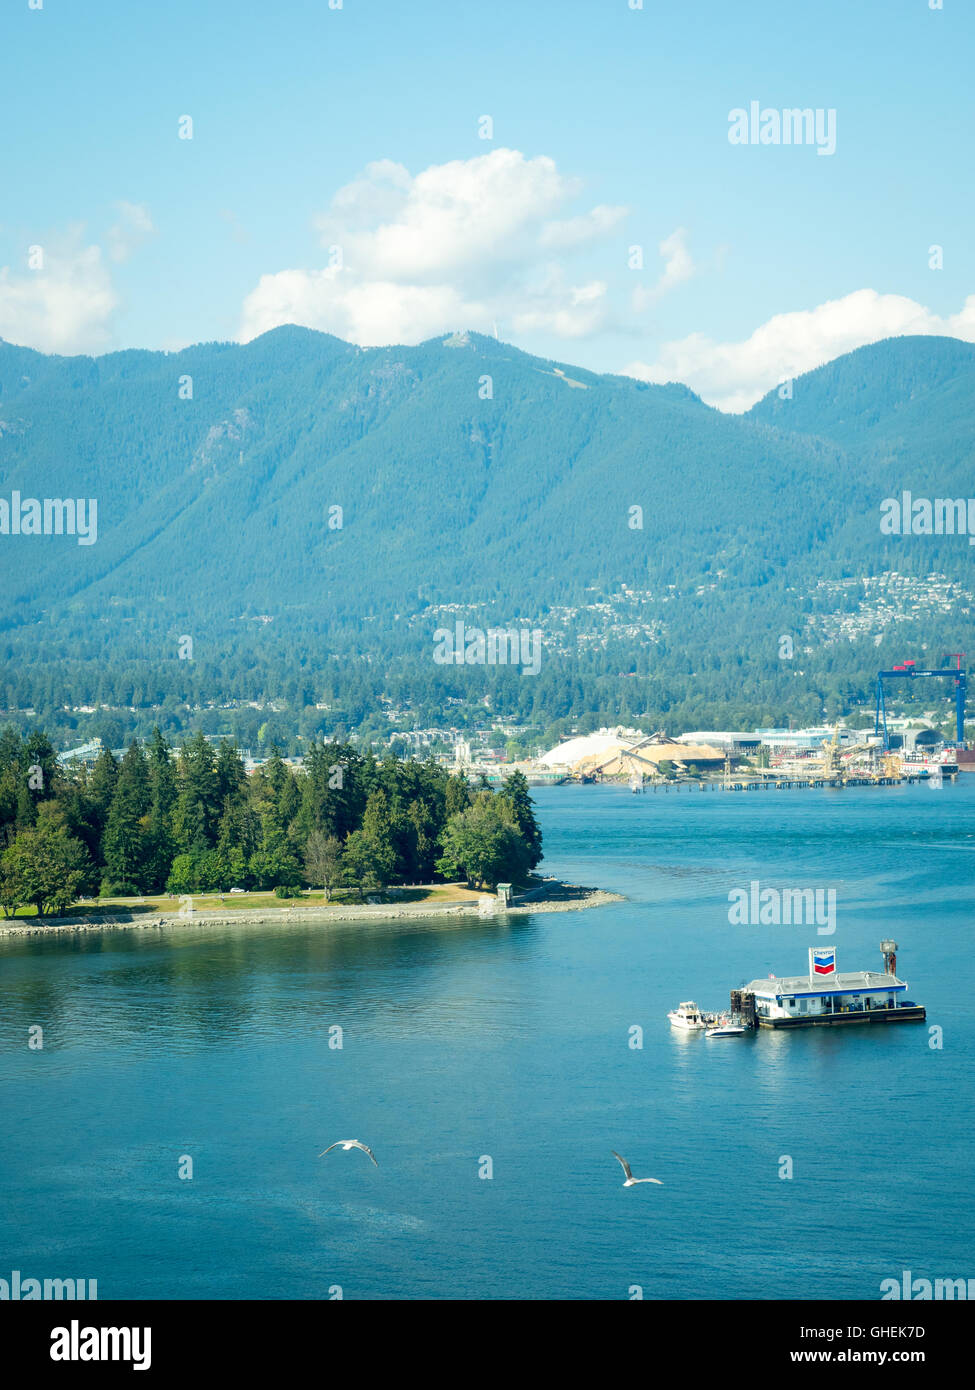 View : Coal Harbour, la station essence Chevron flottante, Stanley Park, Vancouver Harbour, et la montagne Grouse. Vancouver. Banque D'Images